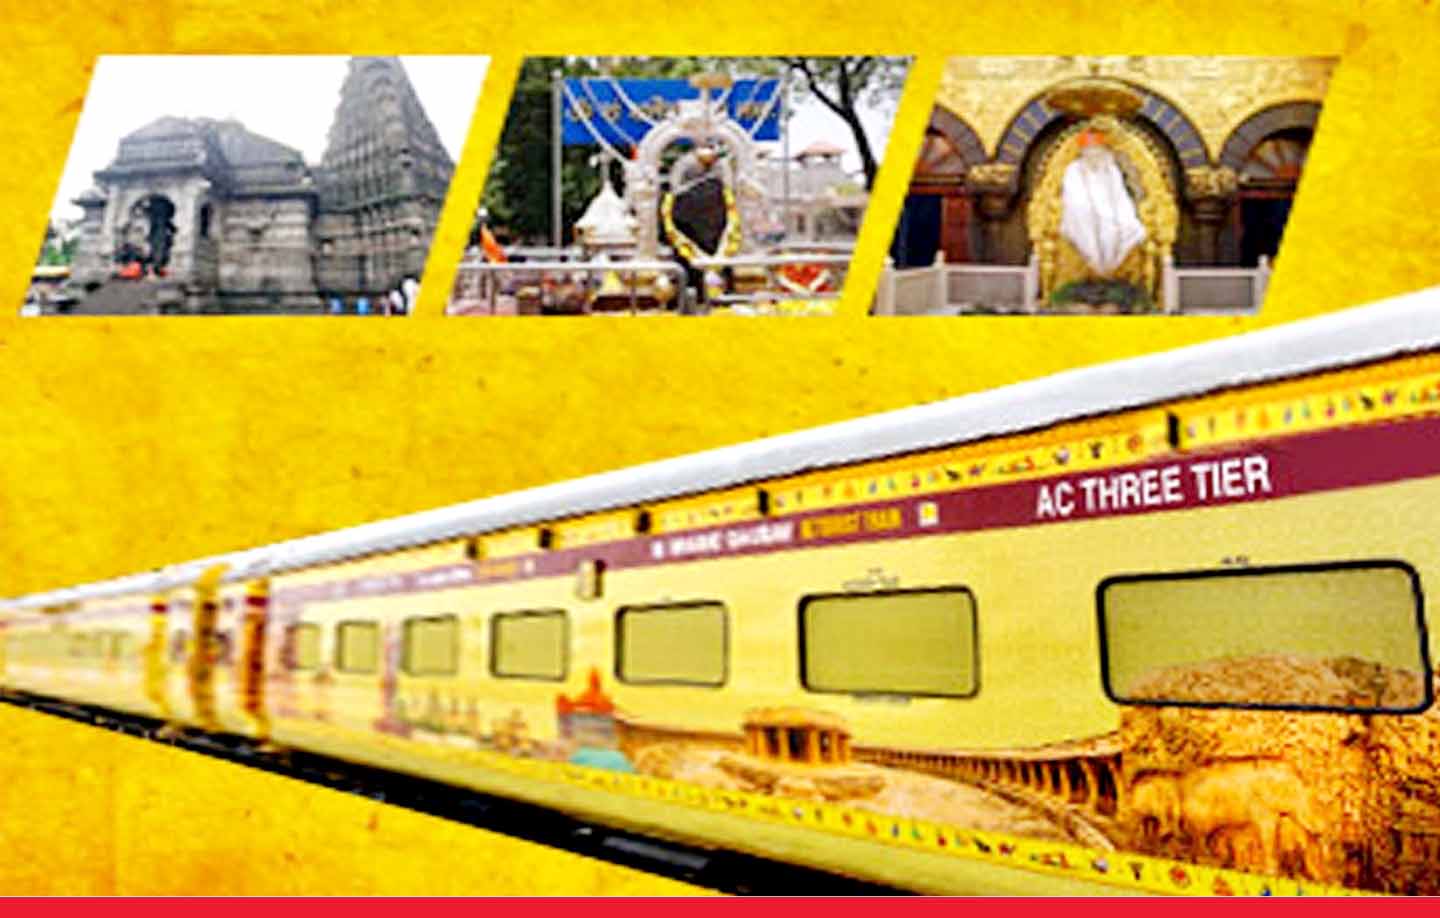 रेलवे लाया लखनऊ से शिरडी, शनि शिंगणापुर और त्र्यंबकेश्वर ज्योतिर्लिंग के लिए टूर पैकेज